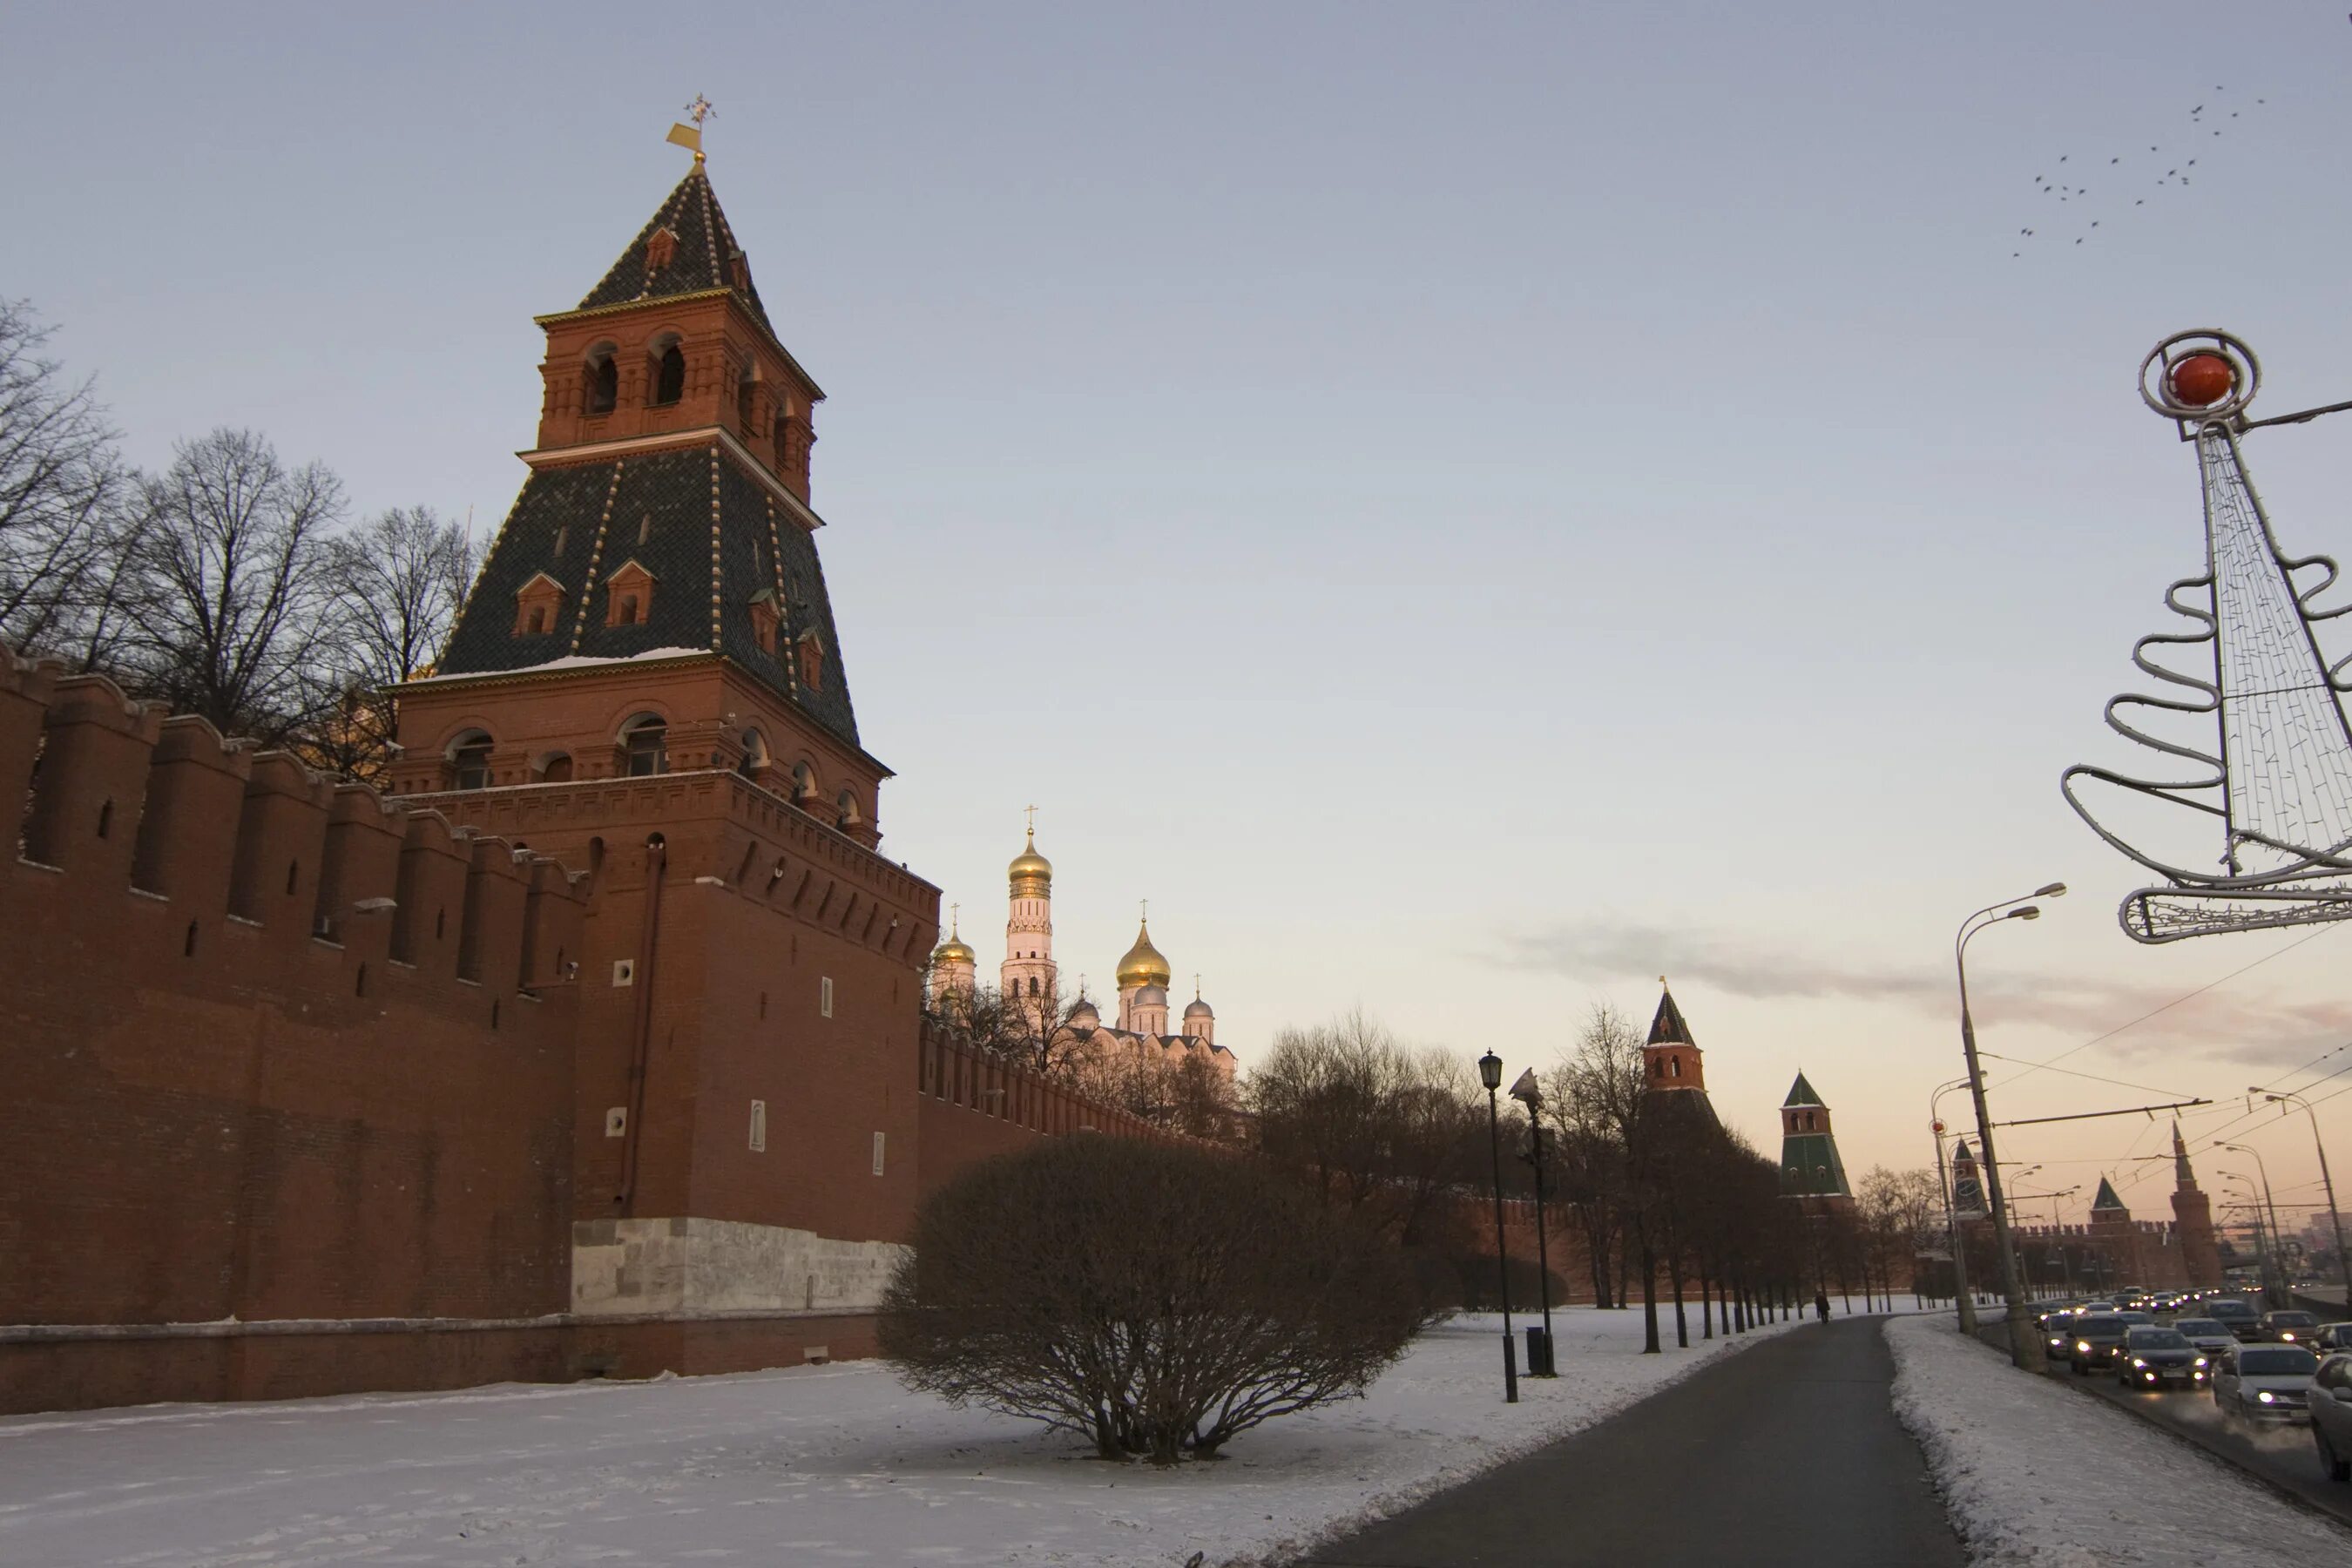 Благовещенская башня Кремля. Тайницкая башня Московского Кремля. Кремлевская стена зимой. Кремлевские окрестности.